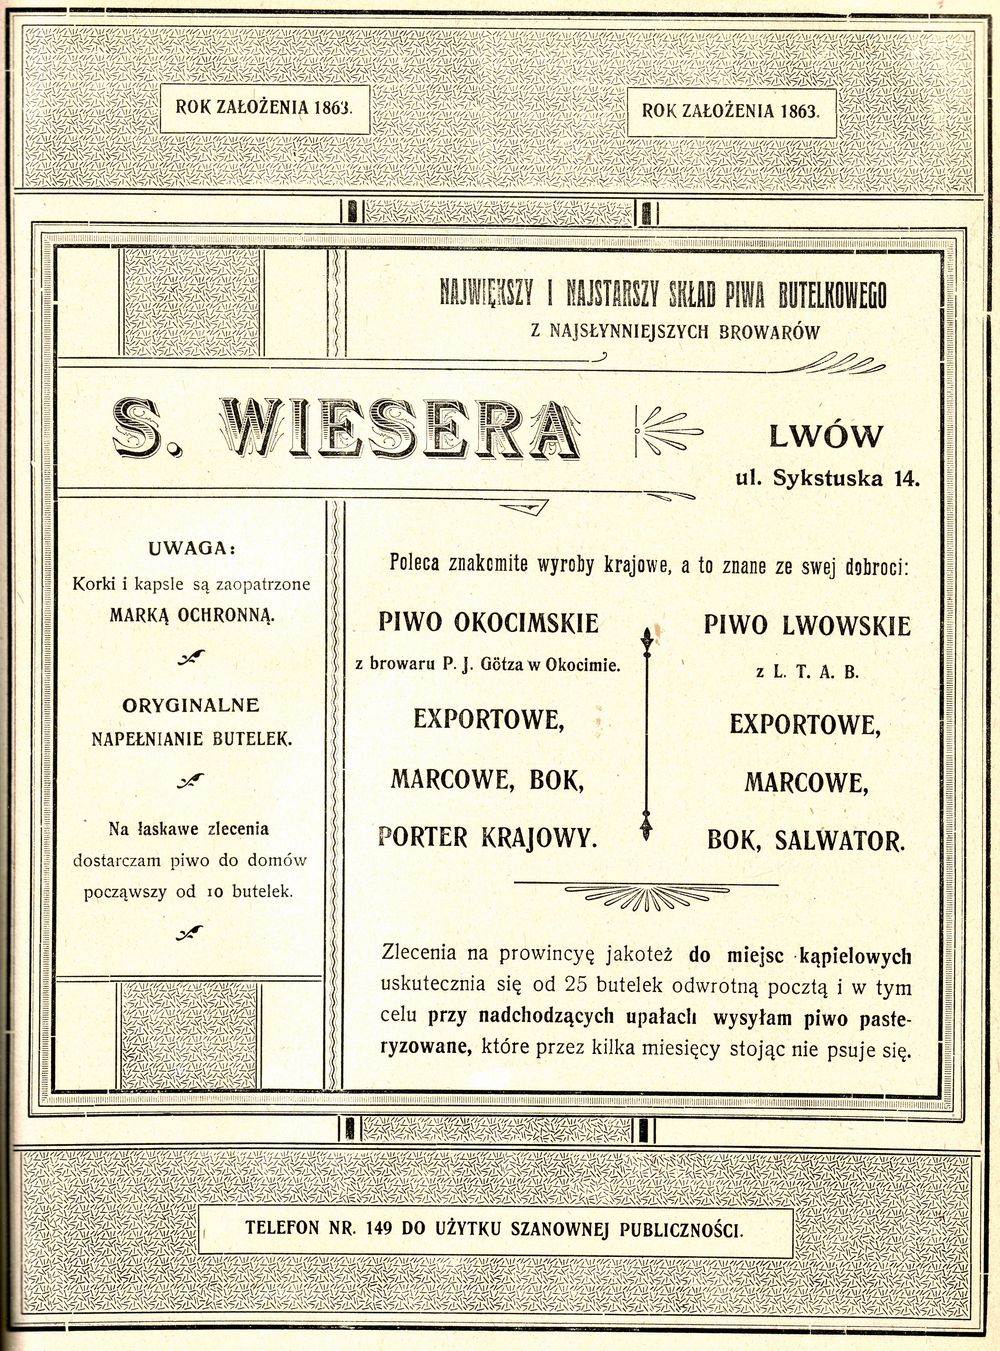 Reklama Składu piwa butelkowego S. Wiesera